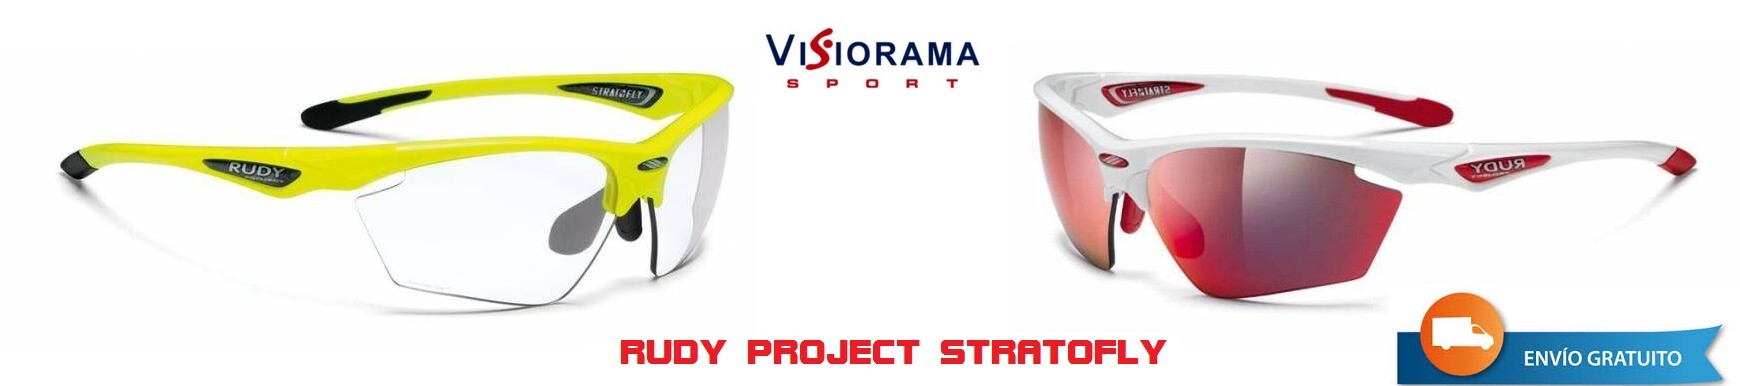 Promoción Rudy Project en VisioramaSport